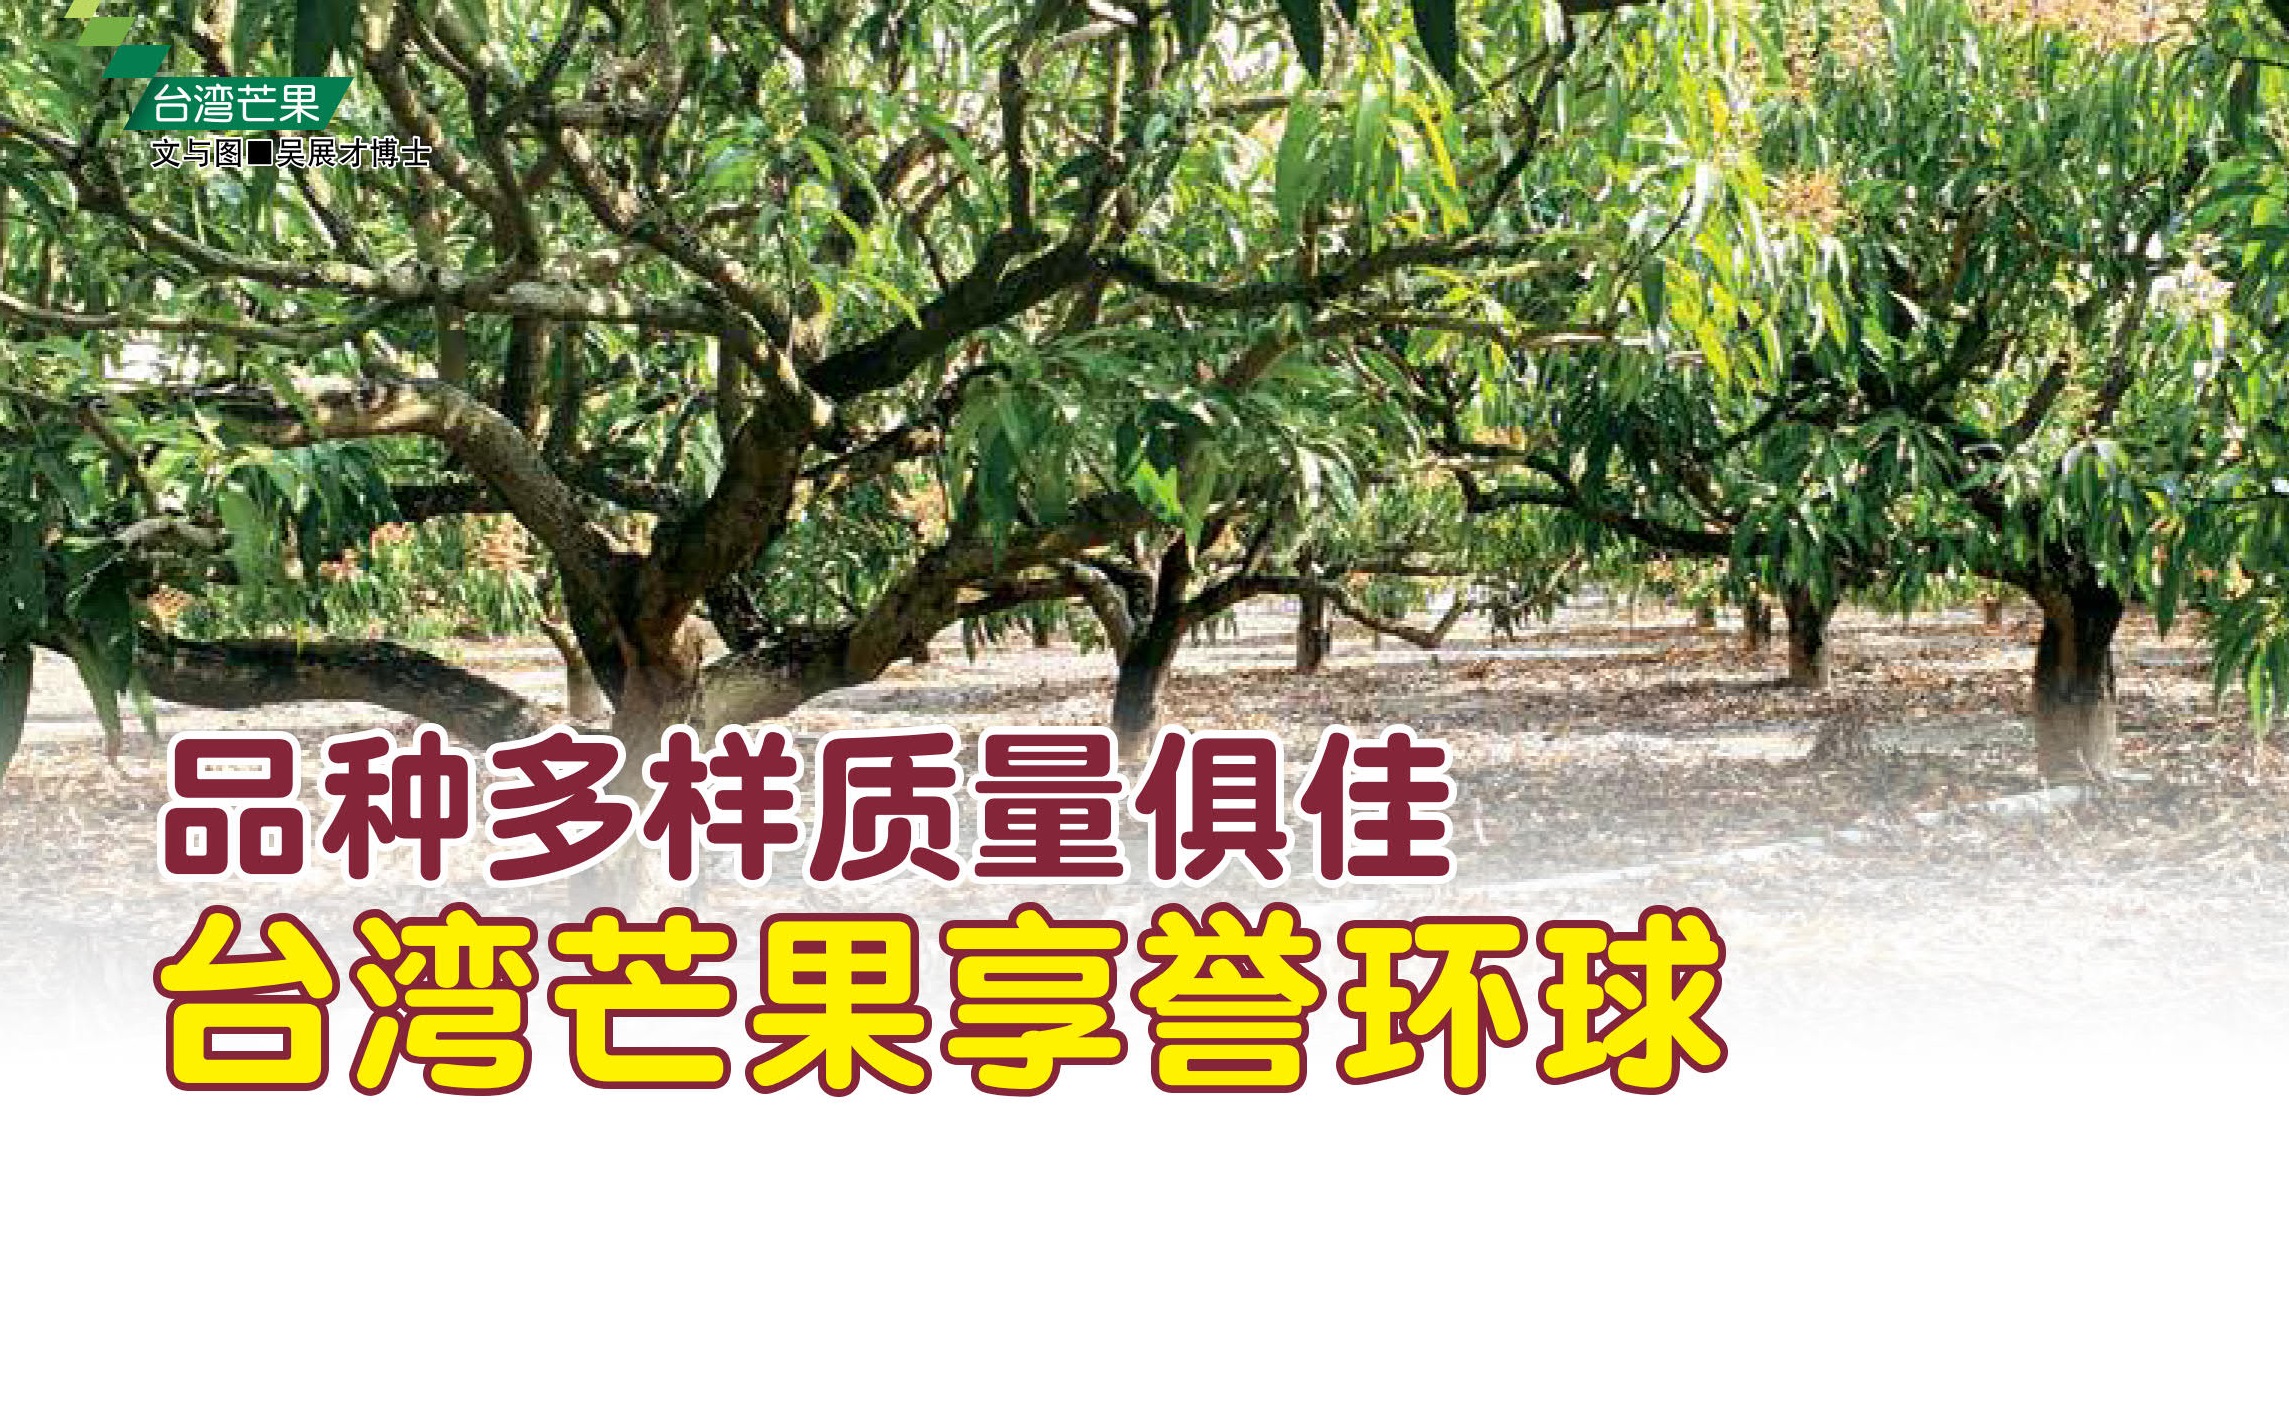 品种多样质量俱佳 台湾芒果享誉环球 - 农牧世界